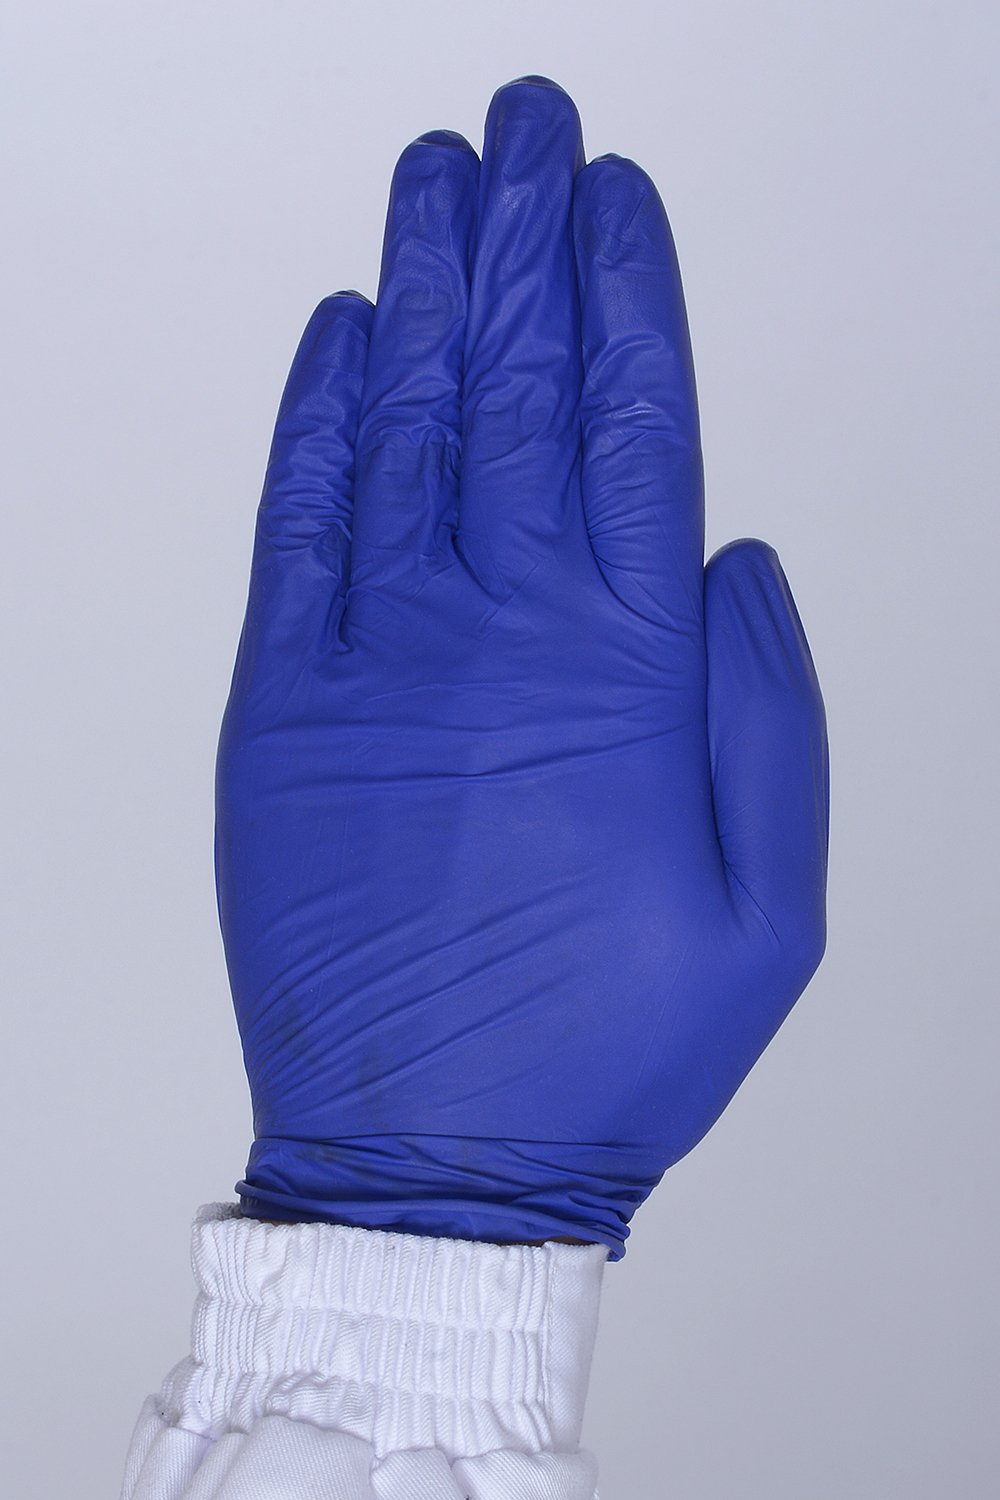 Перчатки нитриловые фиолетовые неопудренные. Фото �2